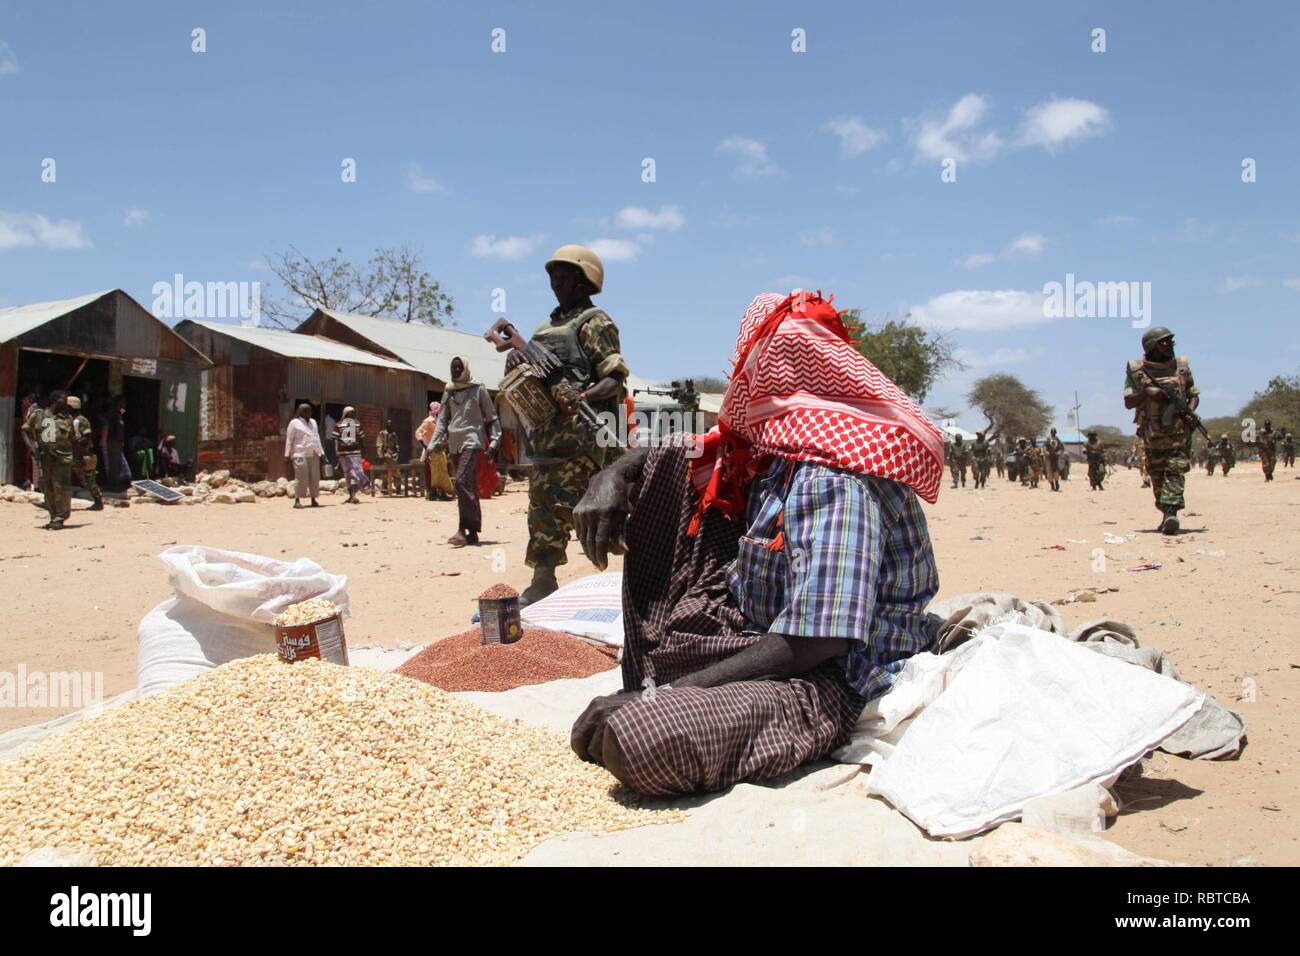 Un homme est assis dans le marché d'Ragaele vendent des produits alimentaires, peu après des soldats burundais appartenant à la Mission de l'Union africaine en Somalie a eu sur la ville d'Al Shabab militants dans l'Hiraan (15230351900). Banque D'Images